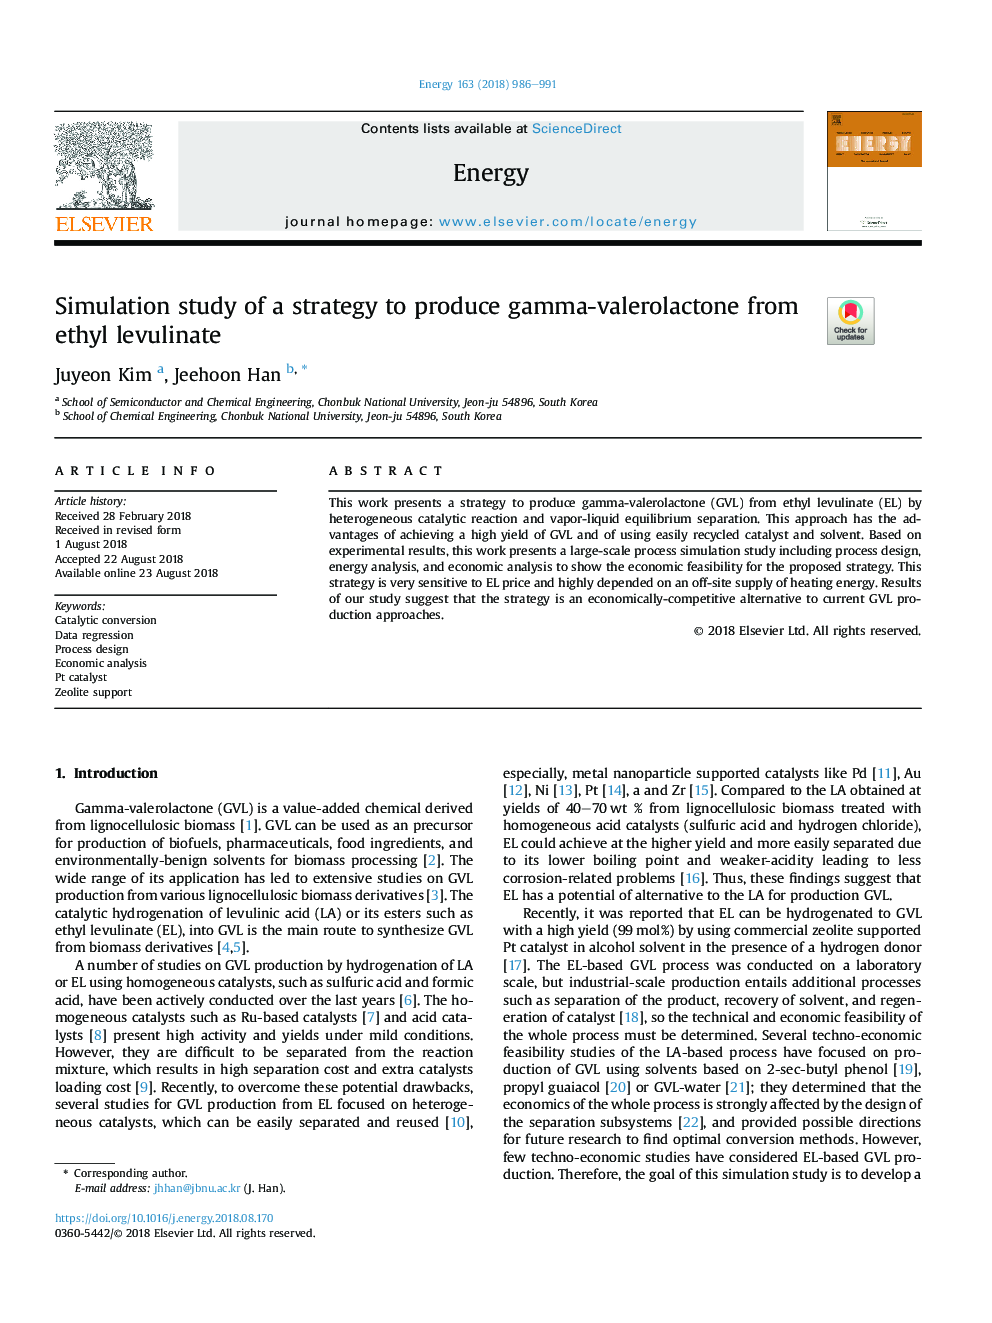 مطالعه شبیه سازی یک استراتژی برای تولید گاما والرولاکتون از اتیل لووالینت